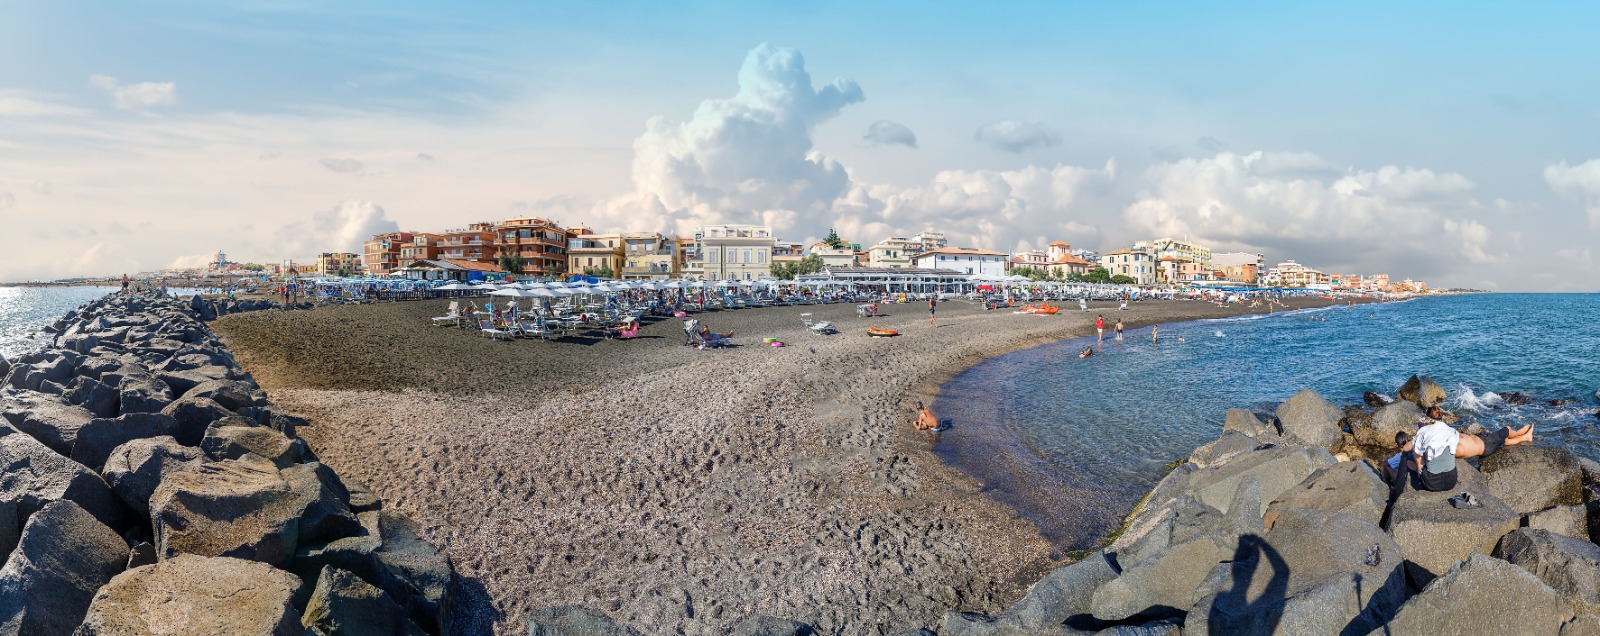 Stabilimento Arcobaleno Ladispoli Spiaggia